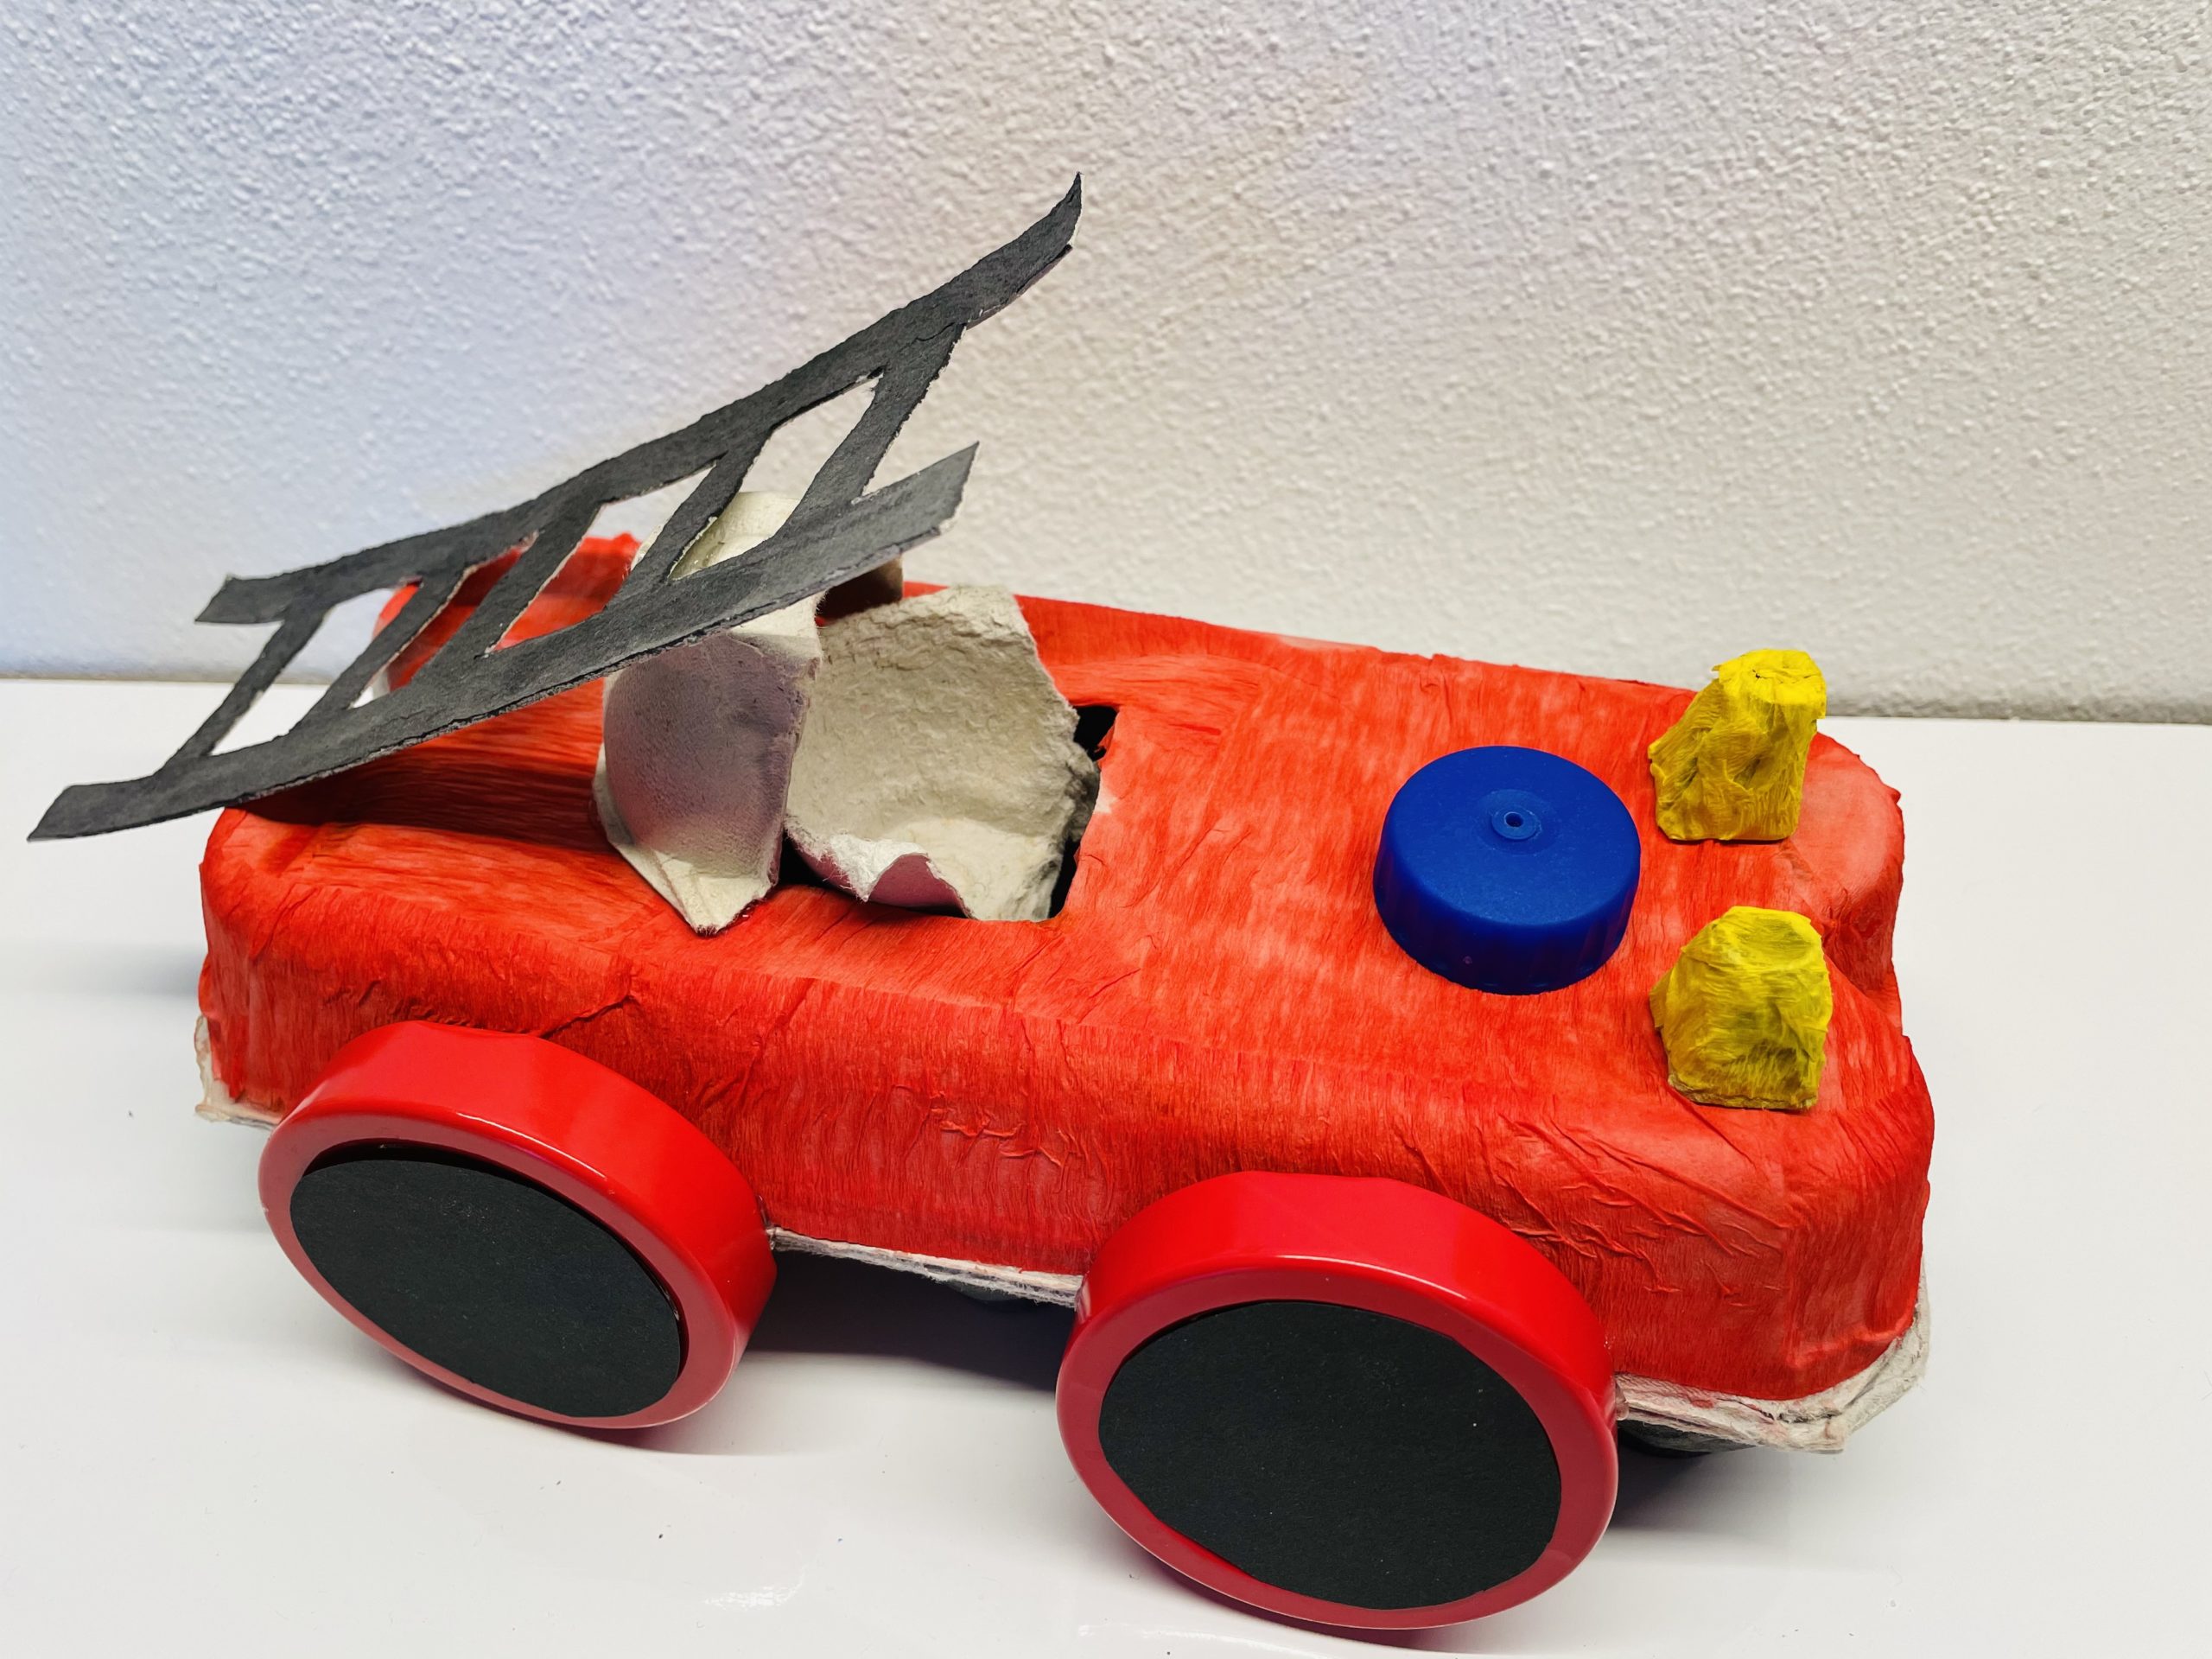 Bild zum Schritt 33 für das Bastel- und DIY-Abenteuer für Kinder: 'Das Feuerwehrauto ist jetzt fertig zum Einsatz!'